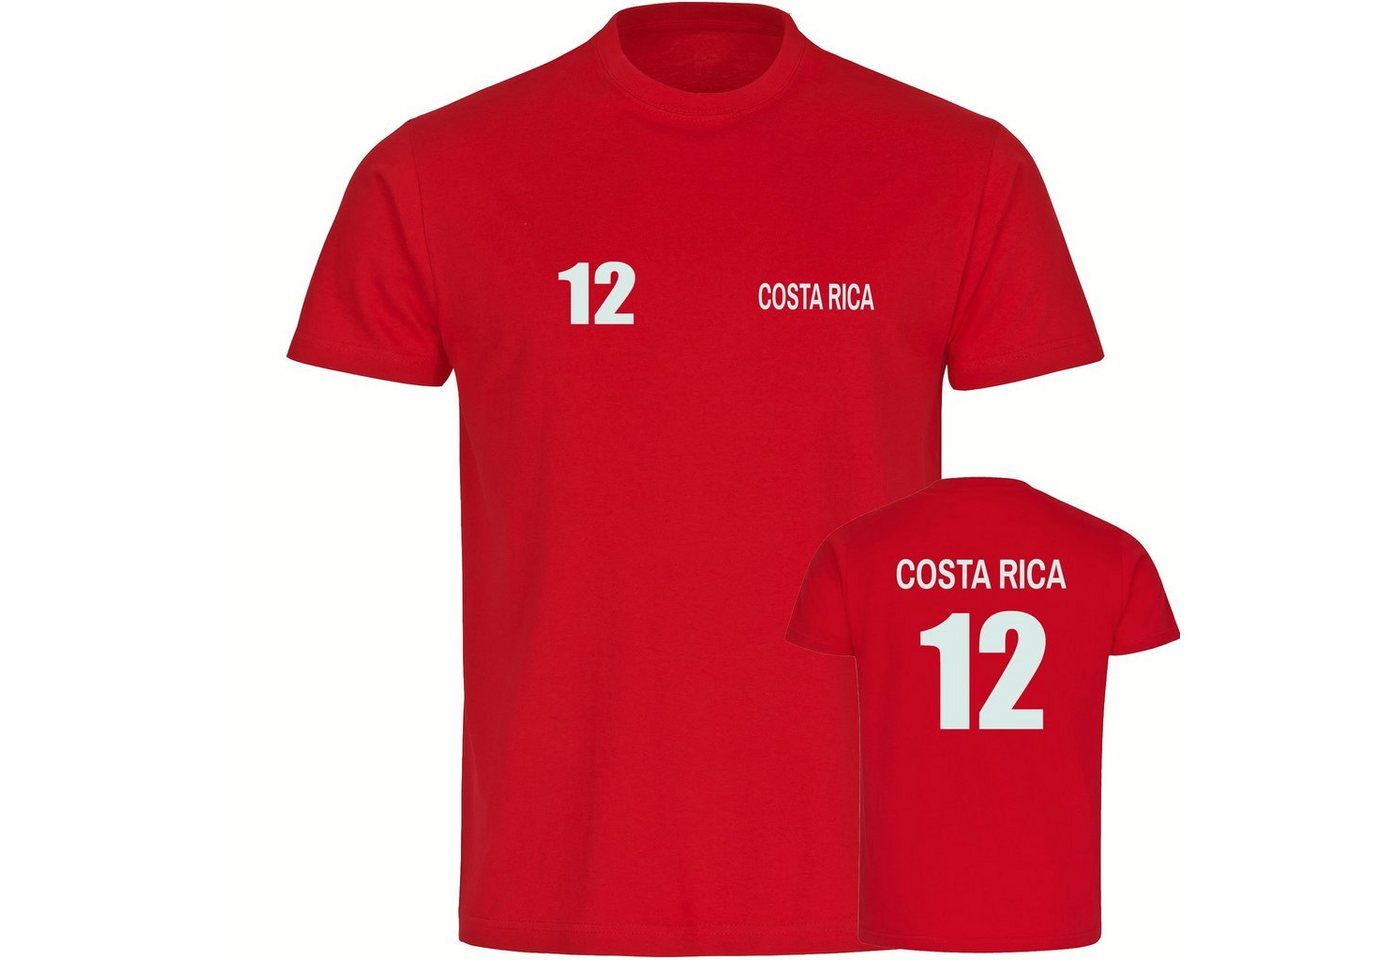 multifanshop T-Shirt Herren Costa Rica - Trikot 12 - Männer von multifanshop